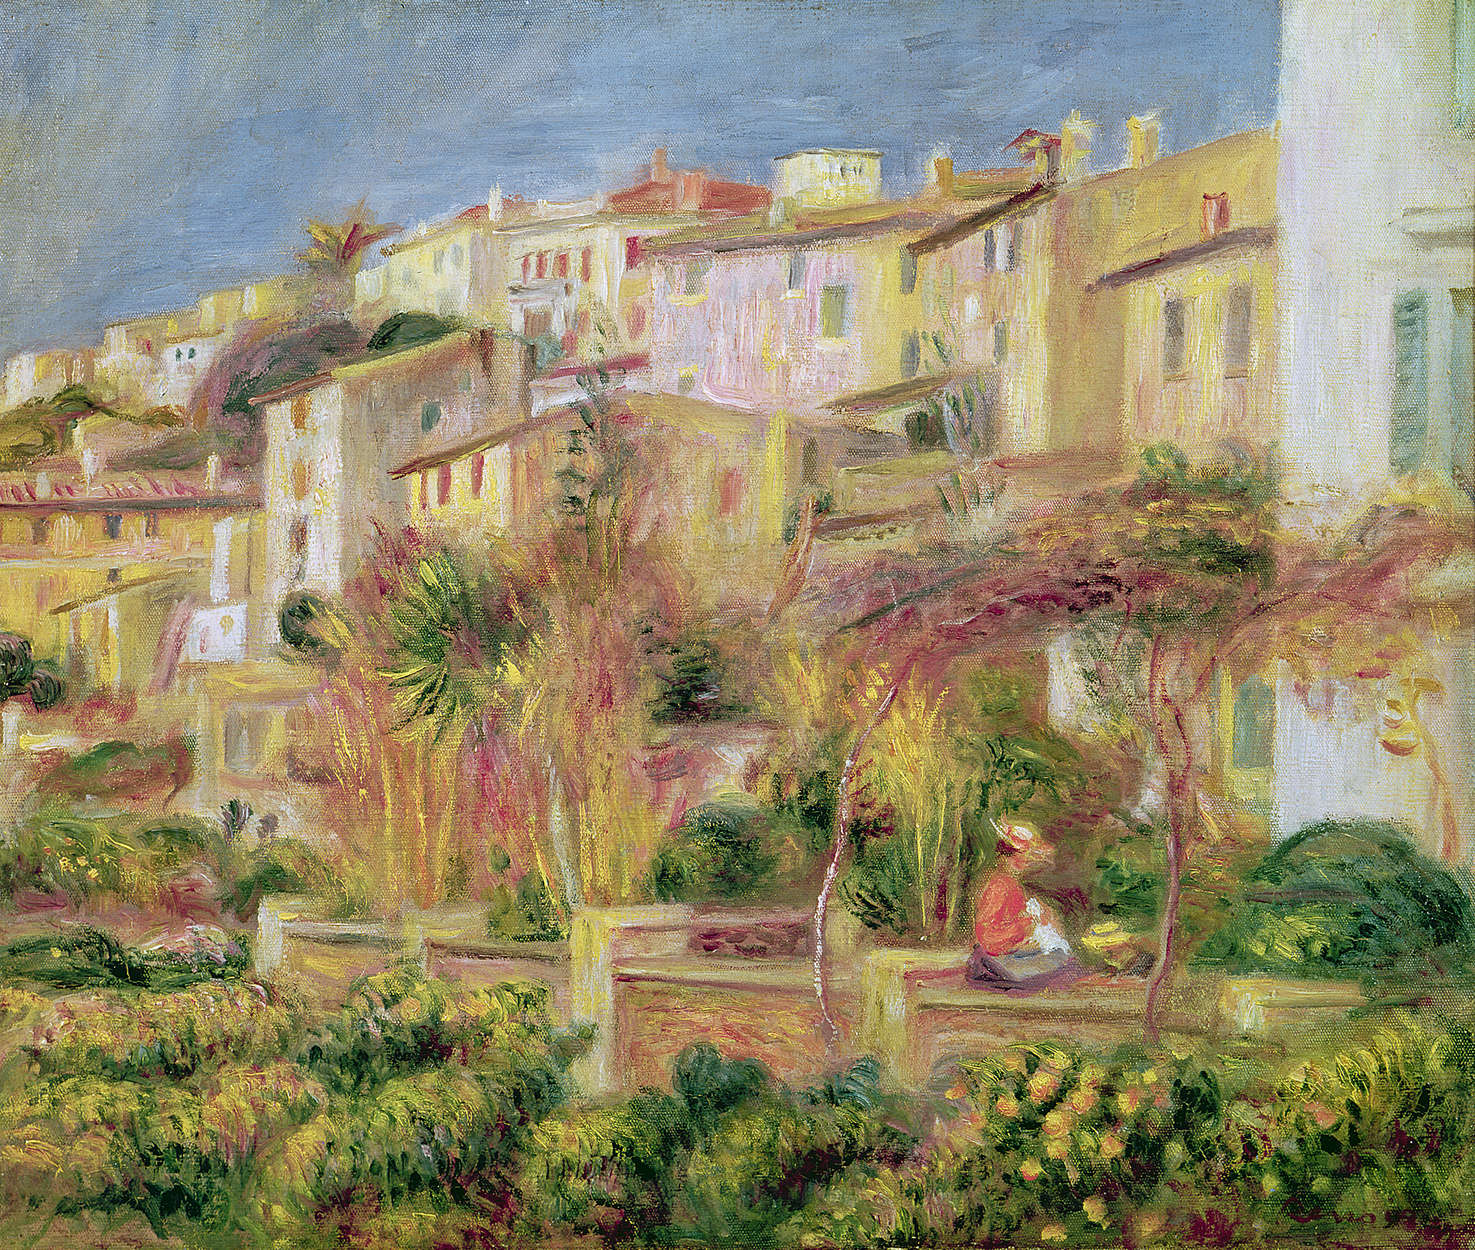             Terrazza a Cagnes" murale di Pierre Auguste Renoir
        